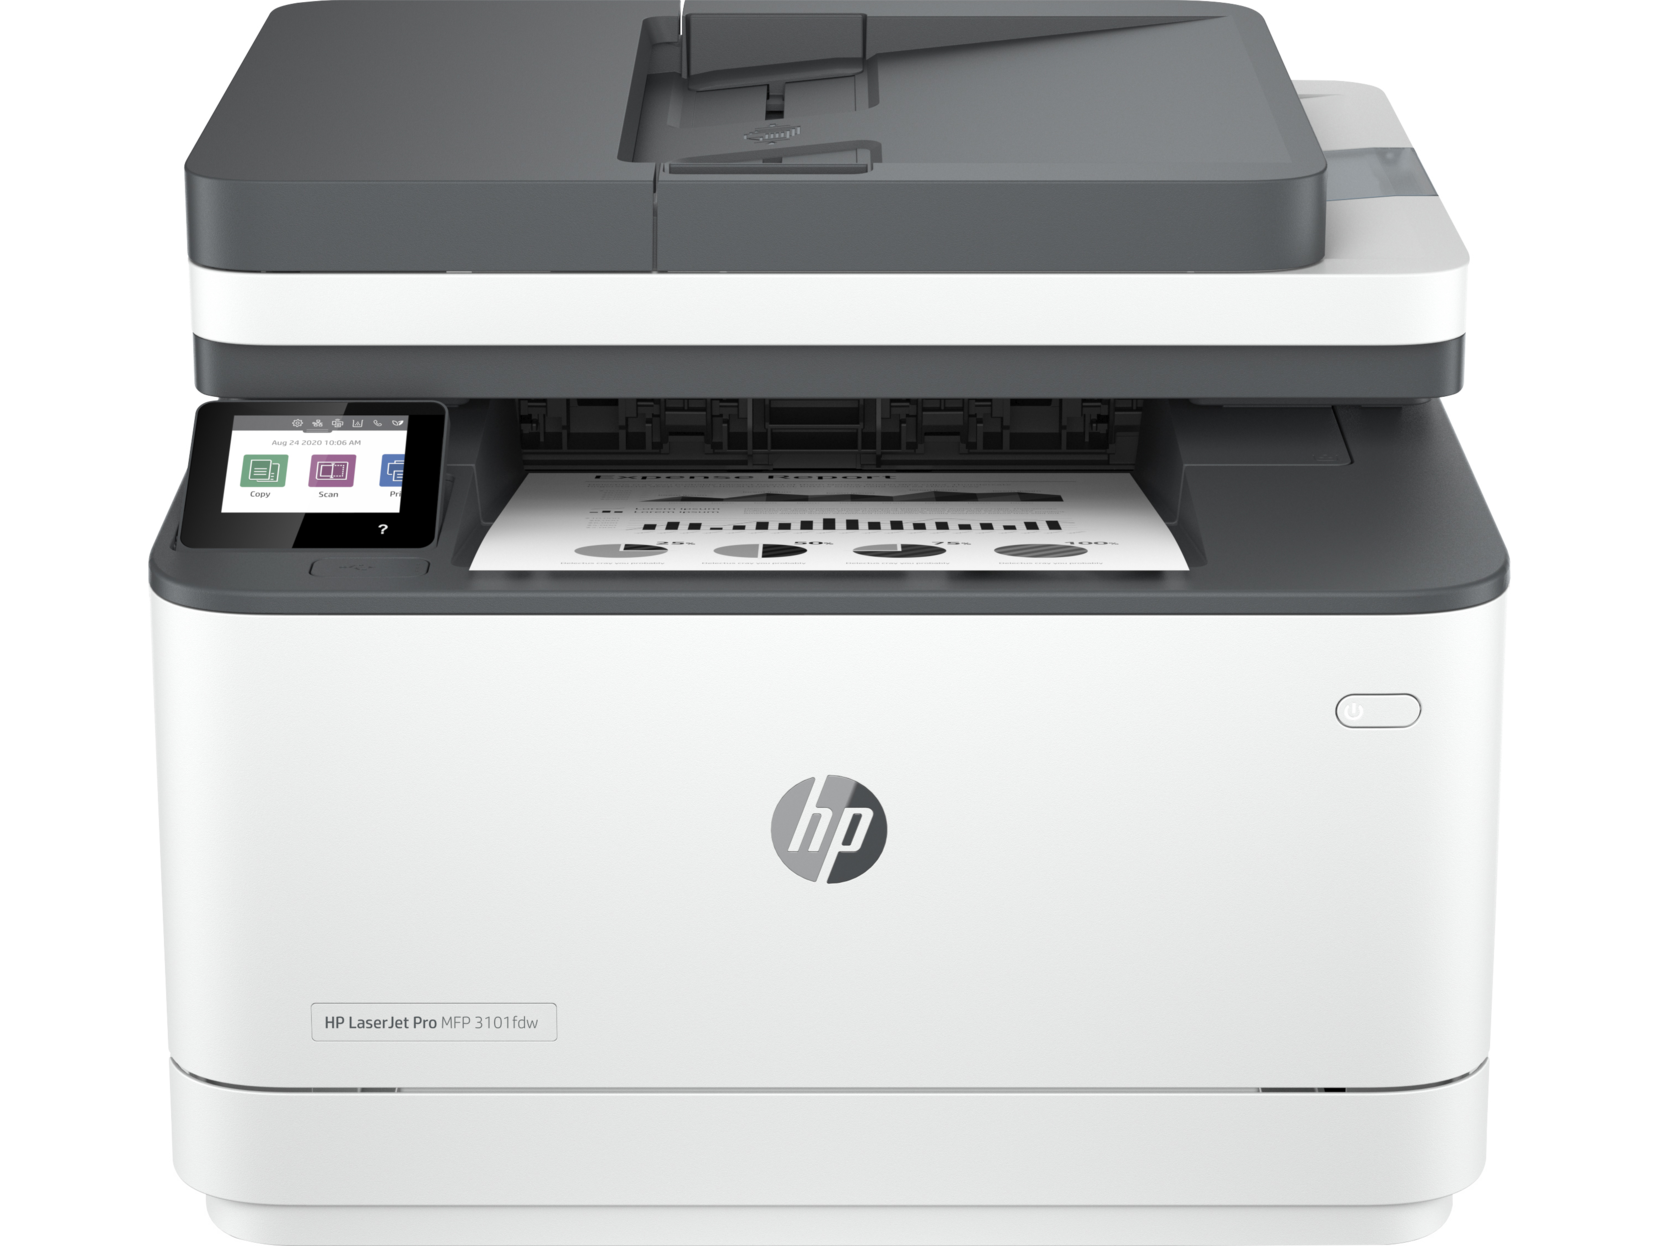 HP LaserJet Pro MFP 3101fdw toner cartridge's printer